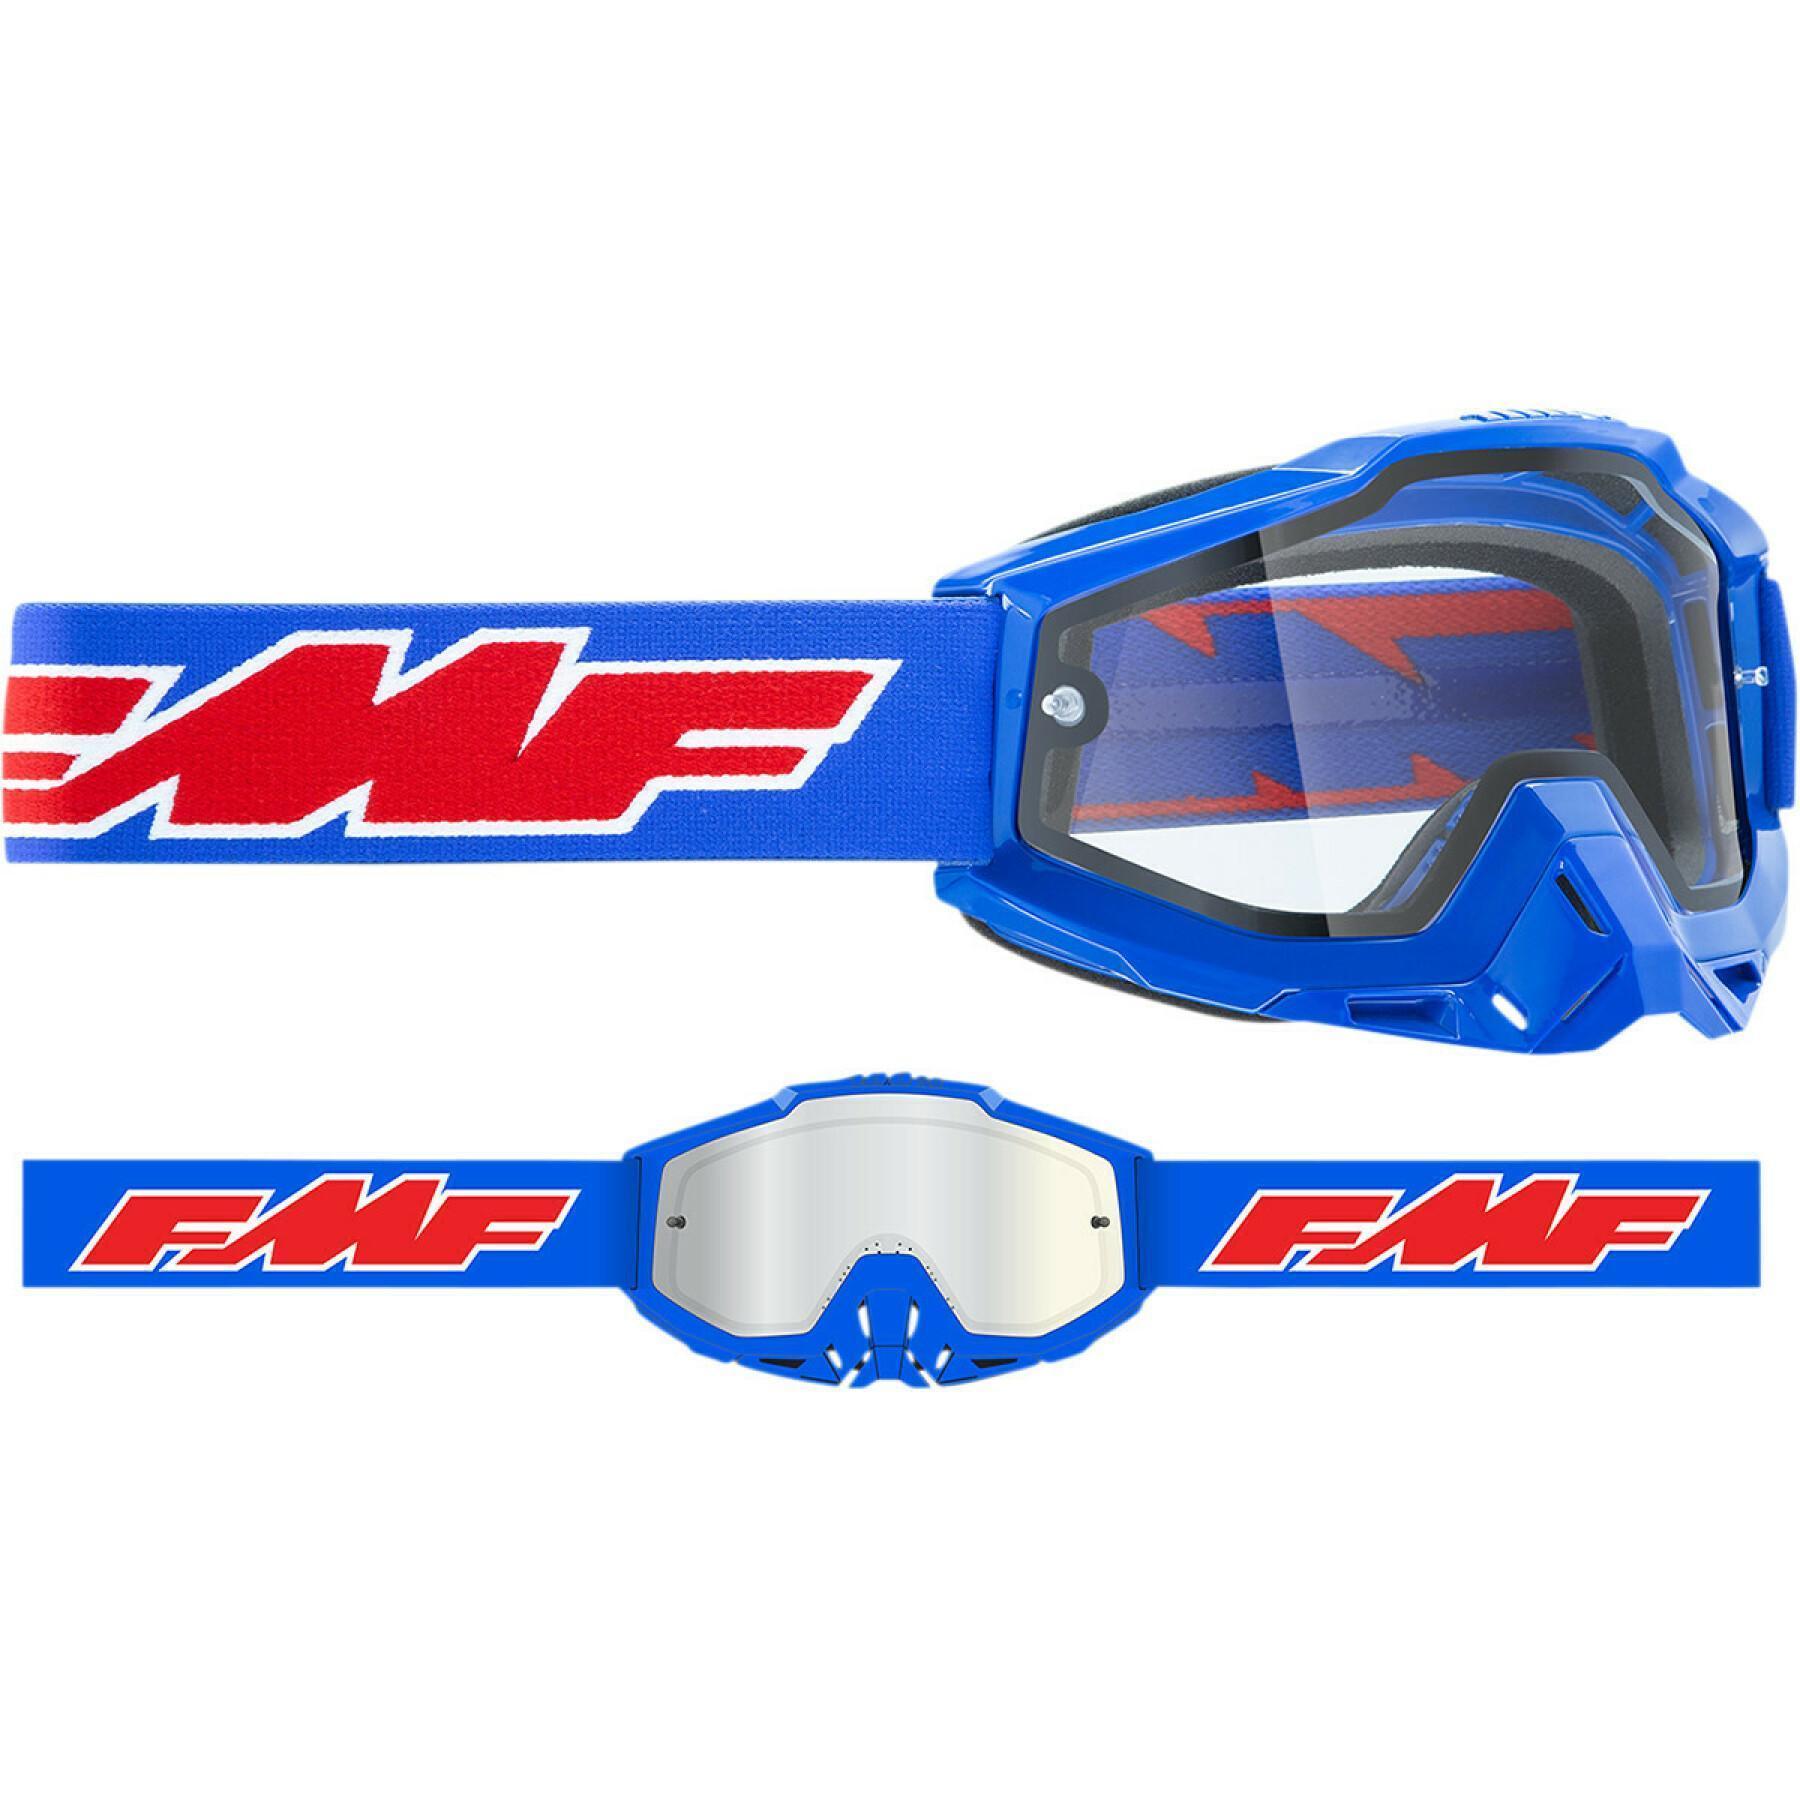 Gafas de moto  FMF Vision endr rocket